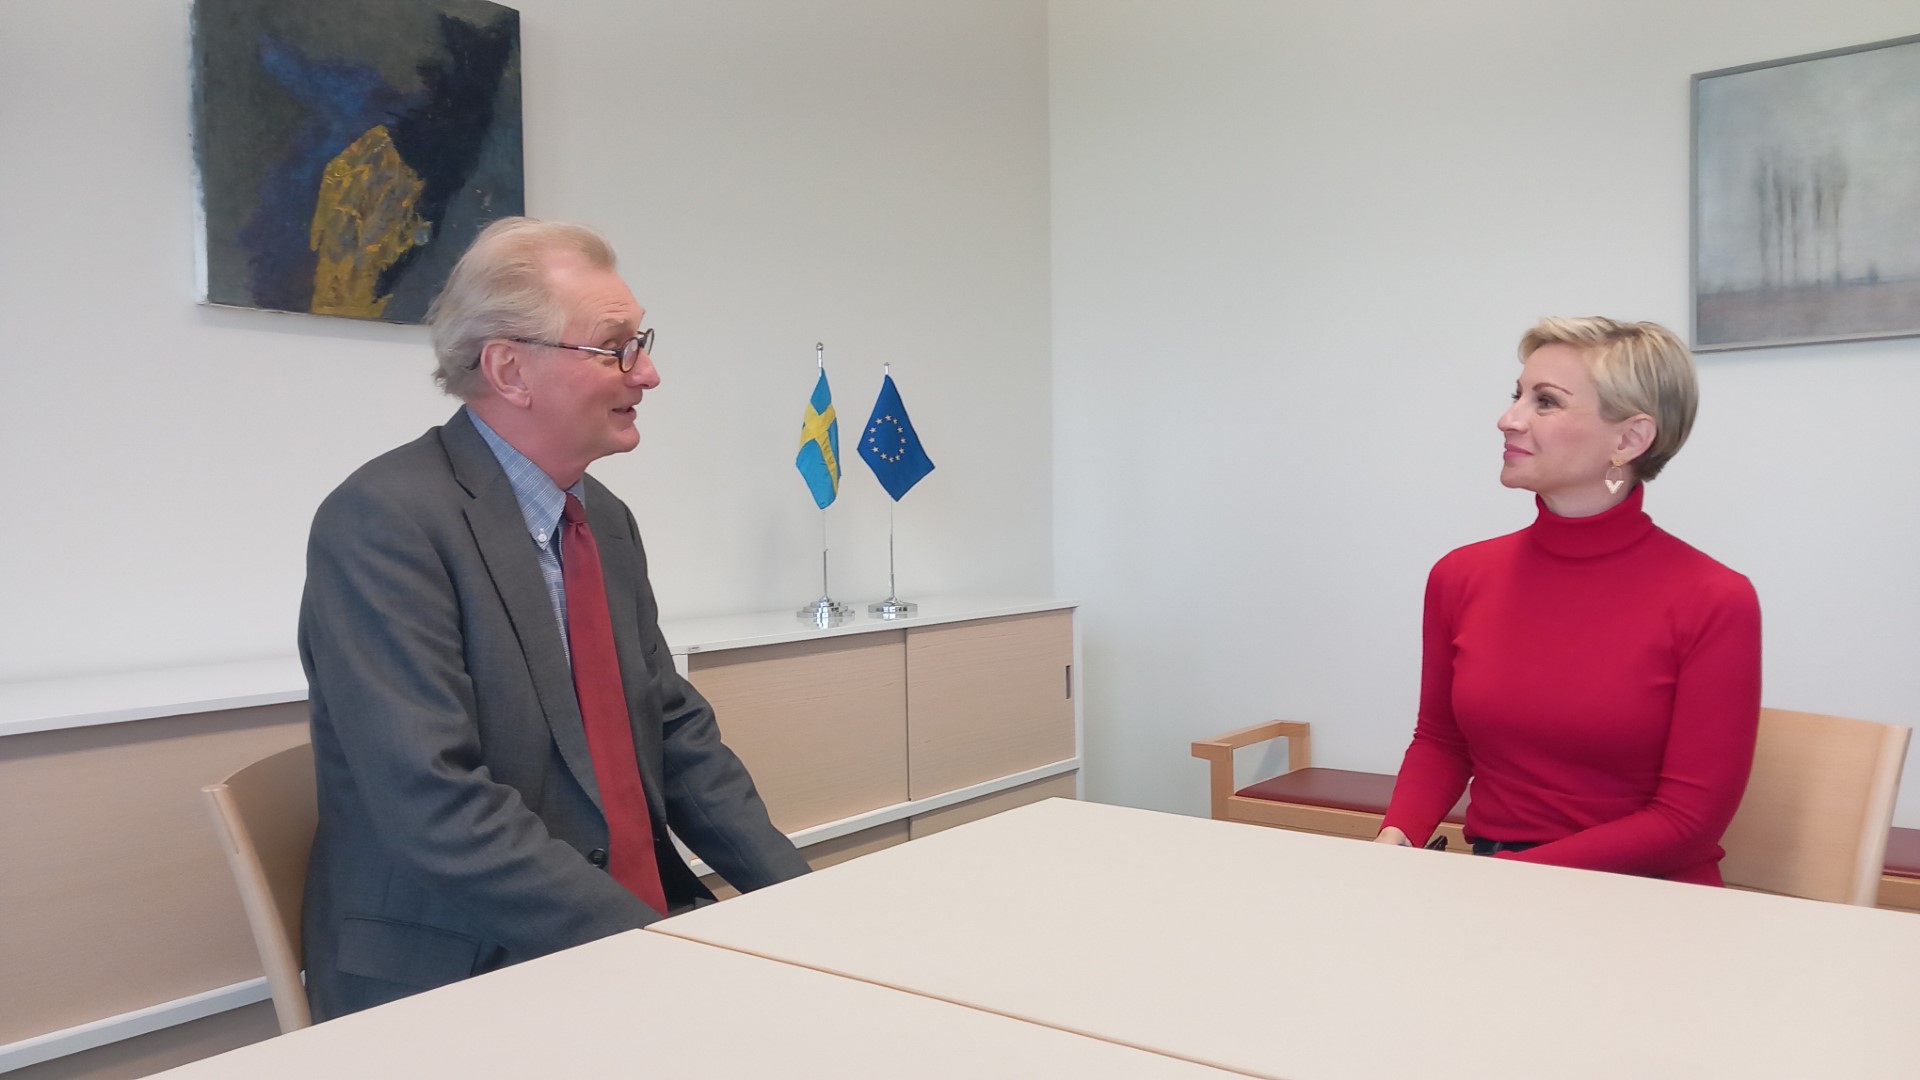 Άξελ Βέρνχοφ στο ΒΗΜΑ: Τι σημαίνει για τη Σουηδία η ένταξη στο ΝΑΤΟ